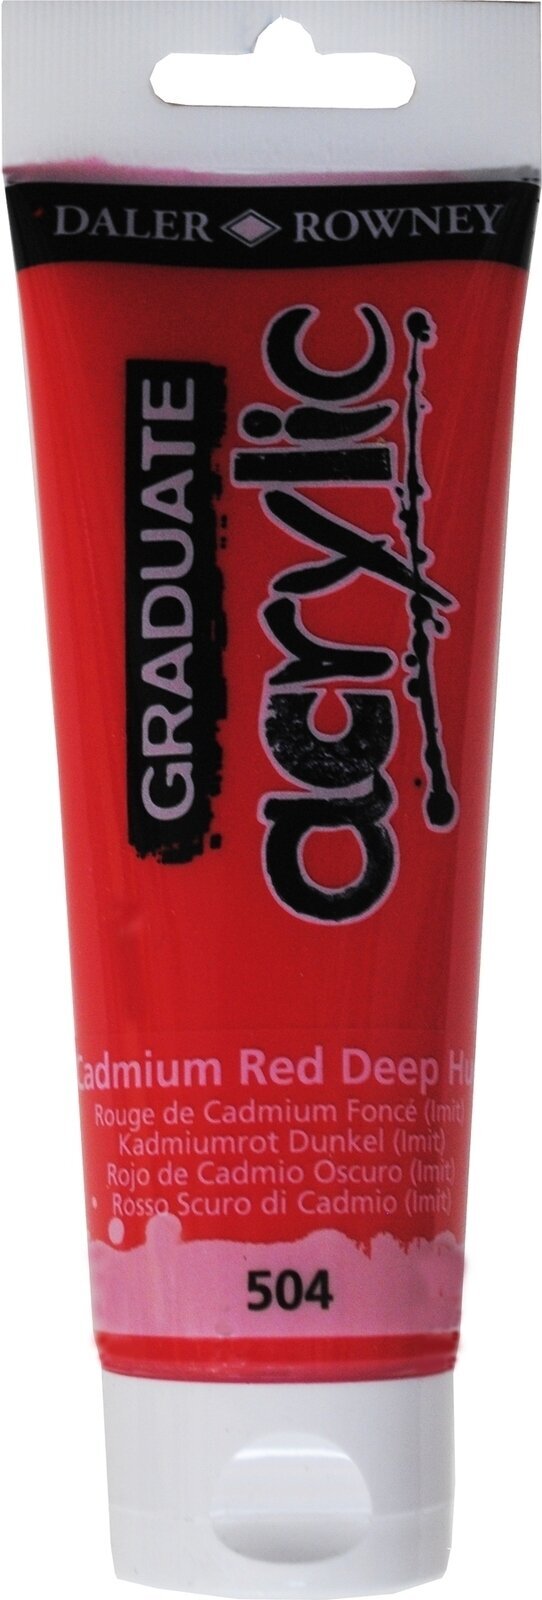 Acrylfarbe Daler Rowney Graduate Acrylfarbe Cadmium Red Deep Hue 120 ml 1 Stck